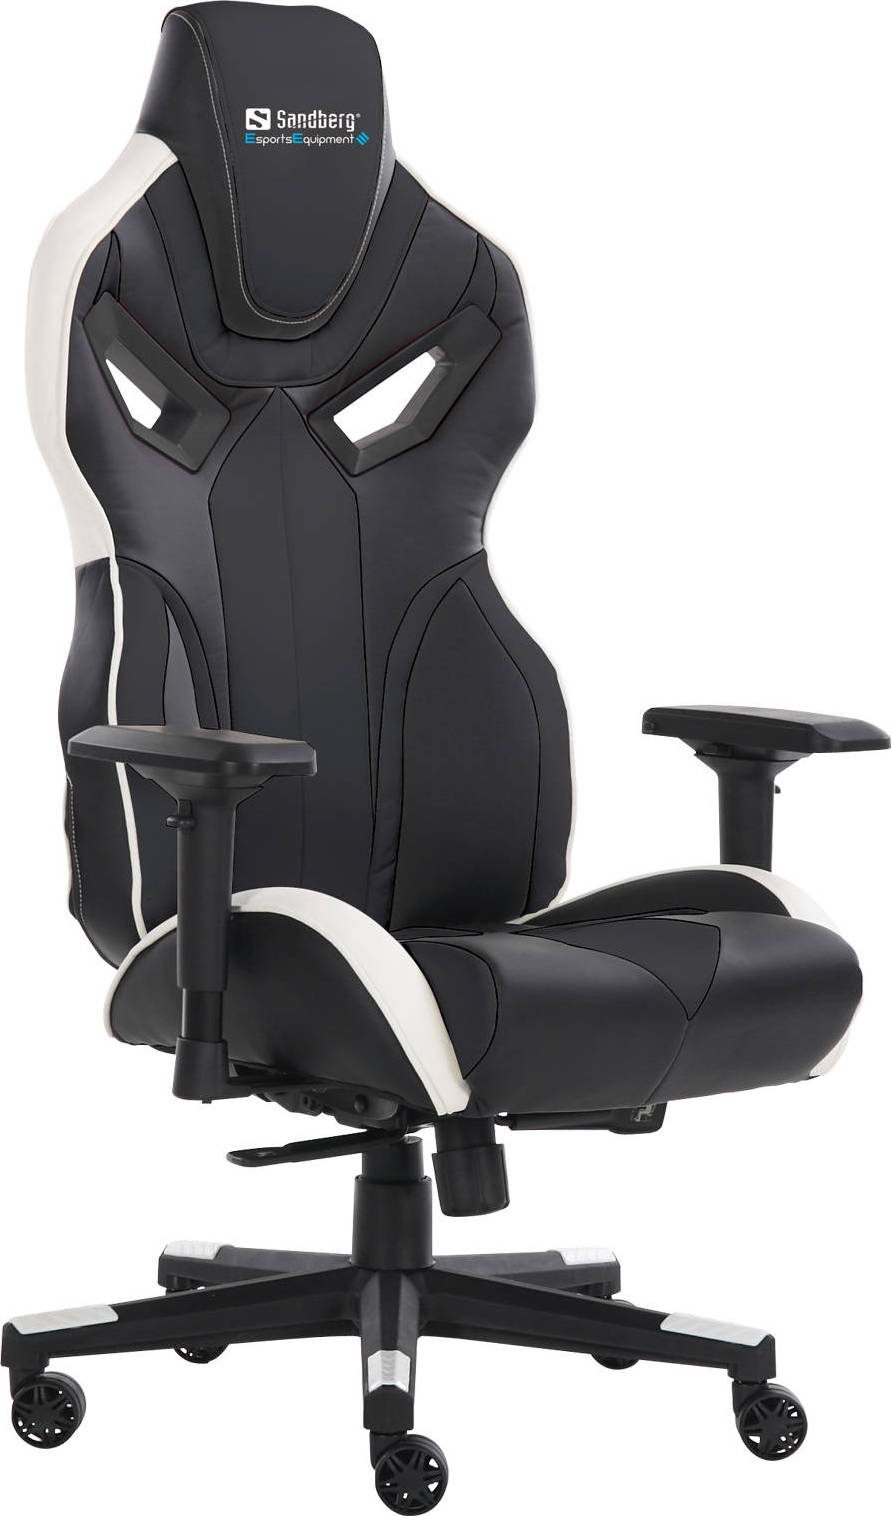  Bild på Sandberg Voodoo Gaming Chair - Black/White gamingstol